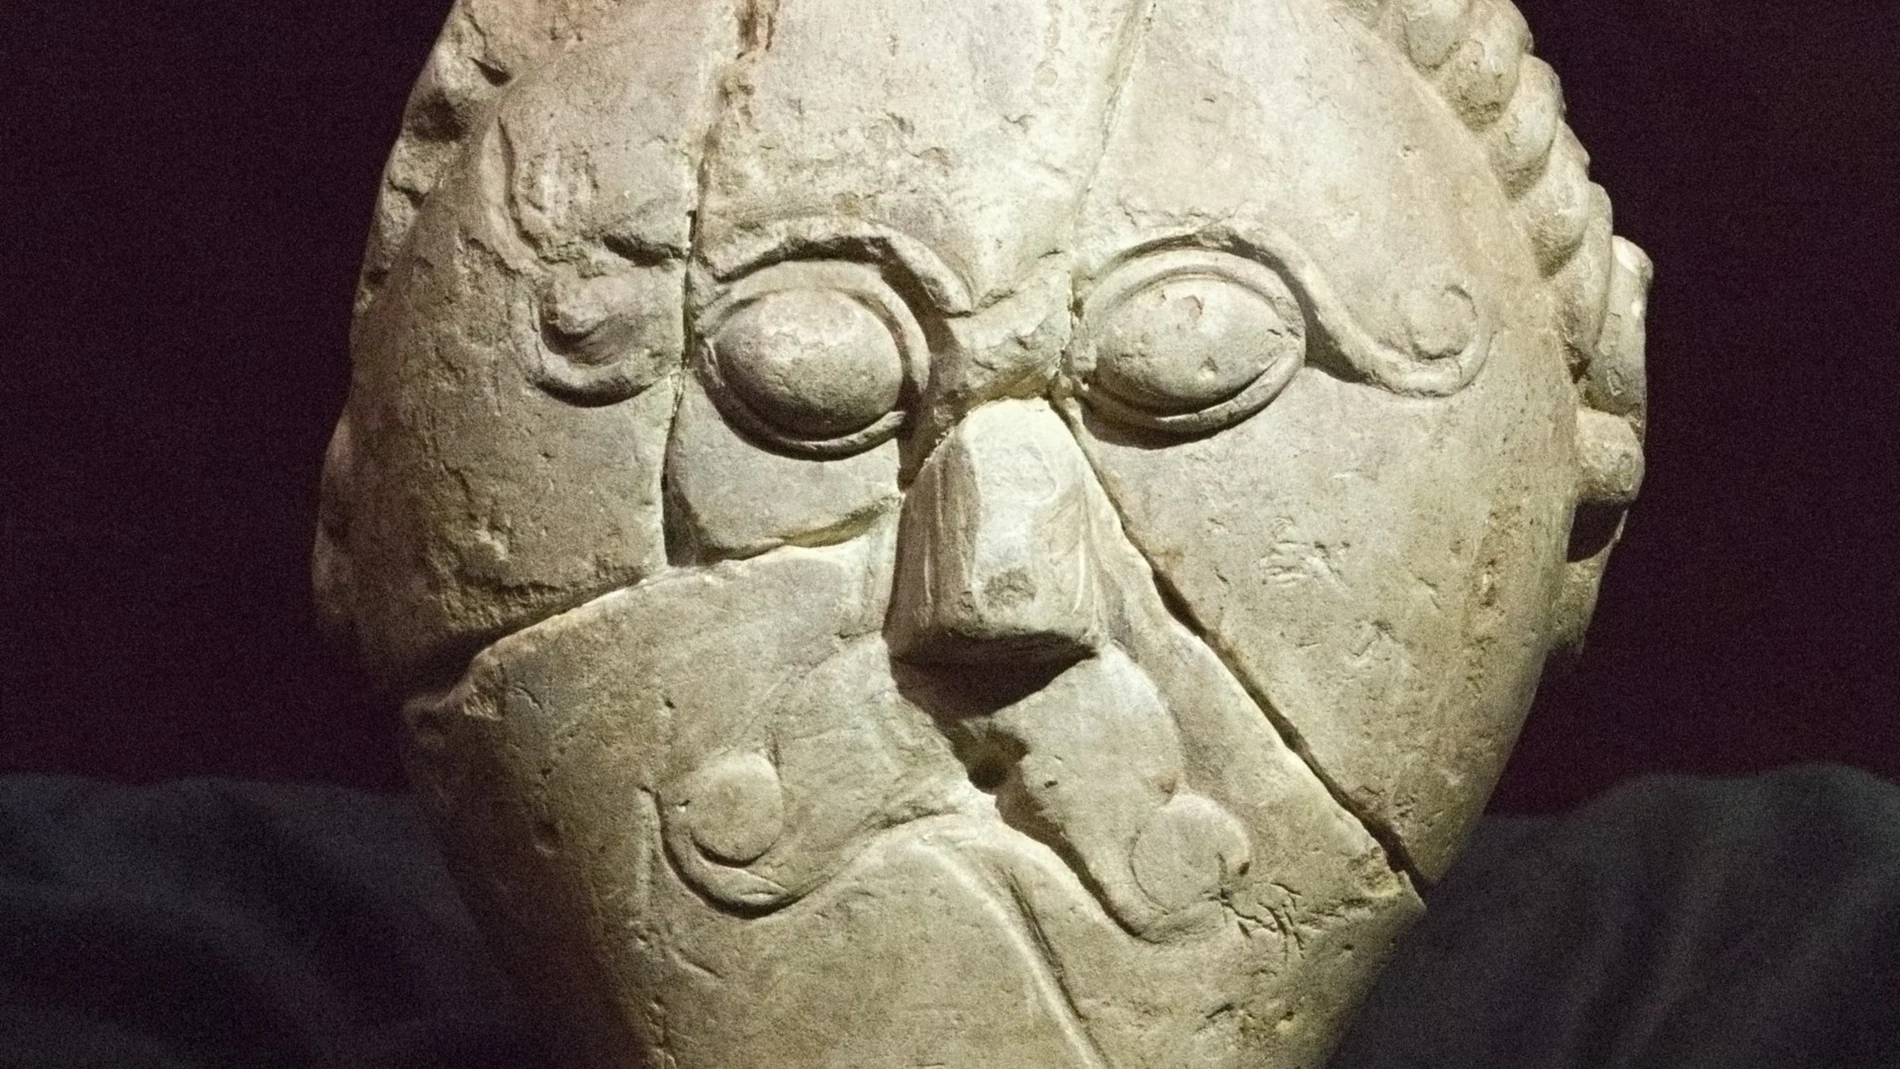 Escultura hallada en Msecké Zehrovice (República Checa) representando a un personaje céltico.